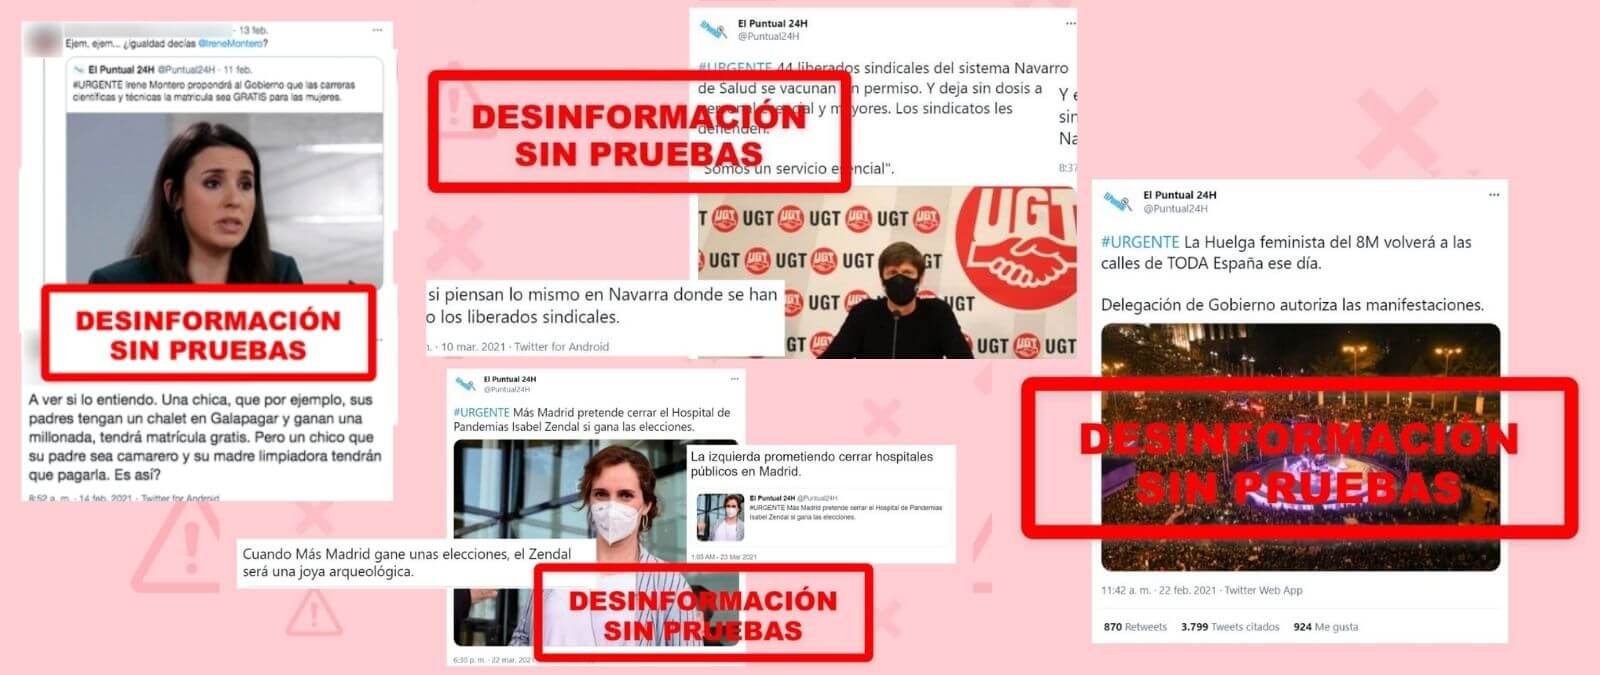 53 bulos y desinformaciones de la cuenta de Twitter 'El Puntual 24H'